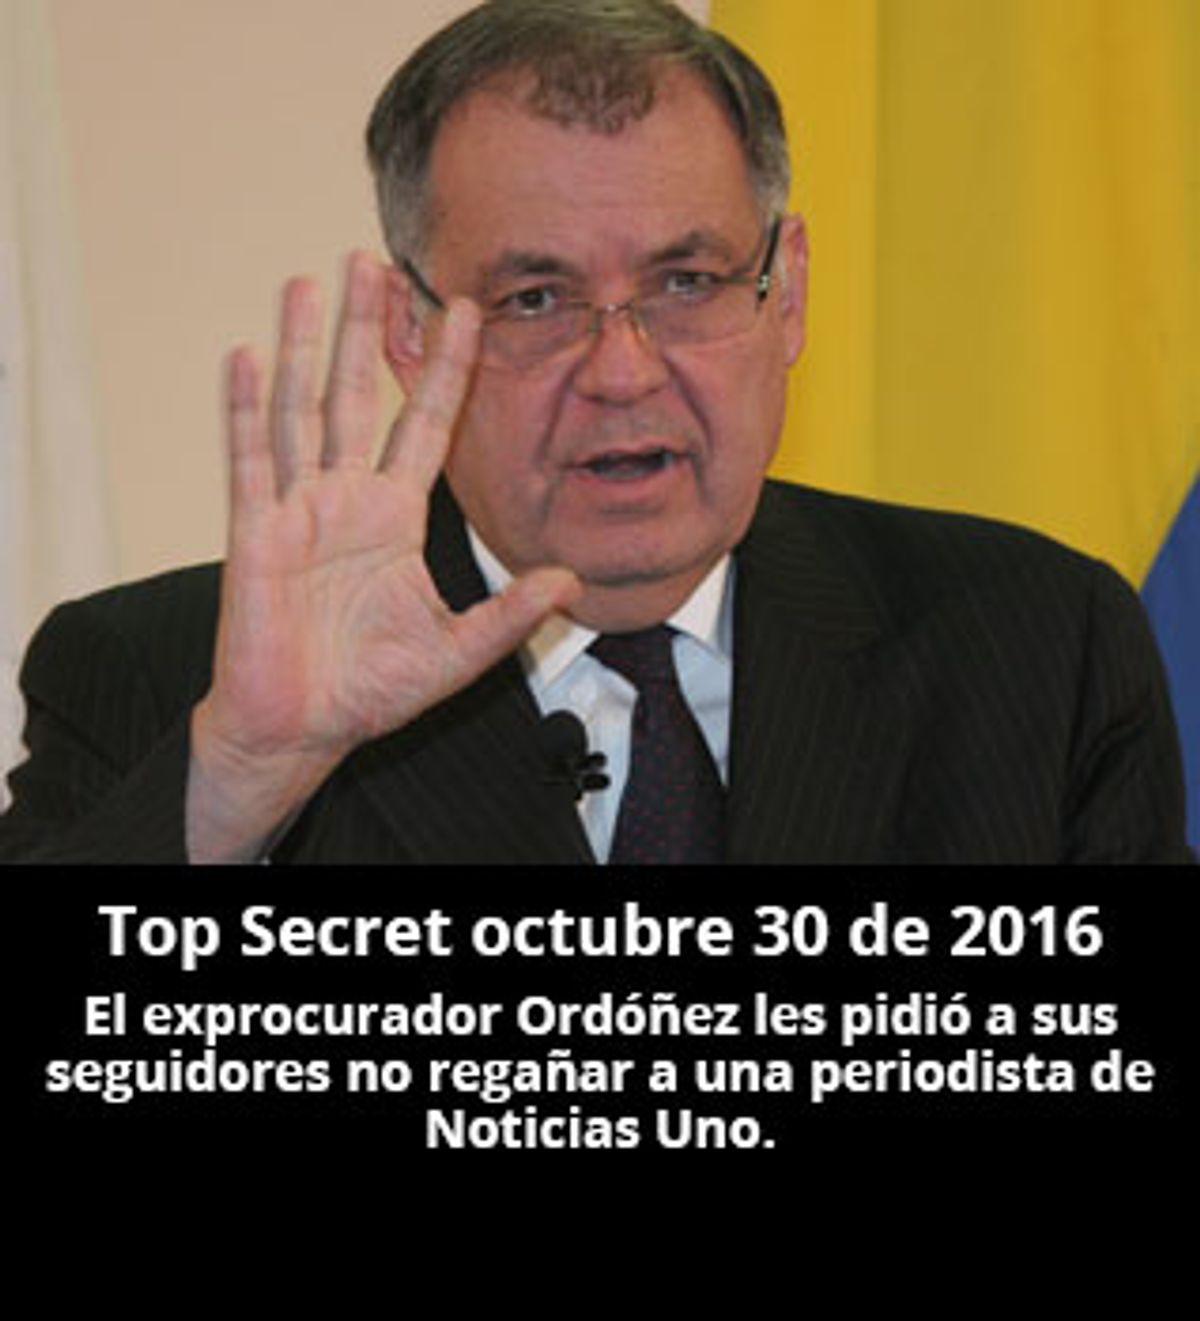 Top Secret octubre 30 de 2016